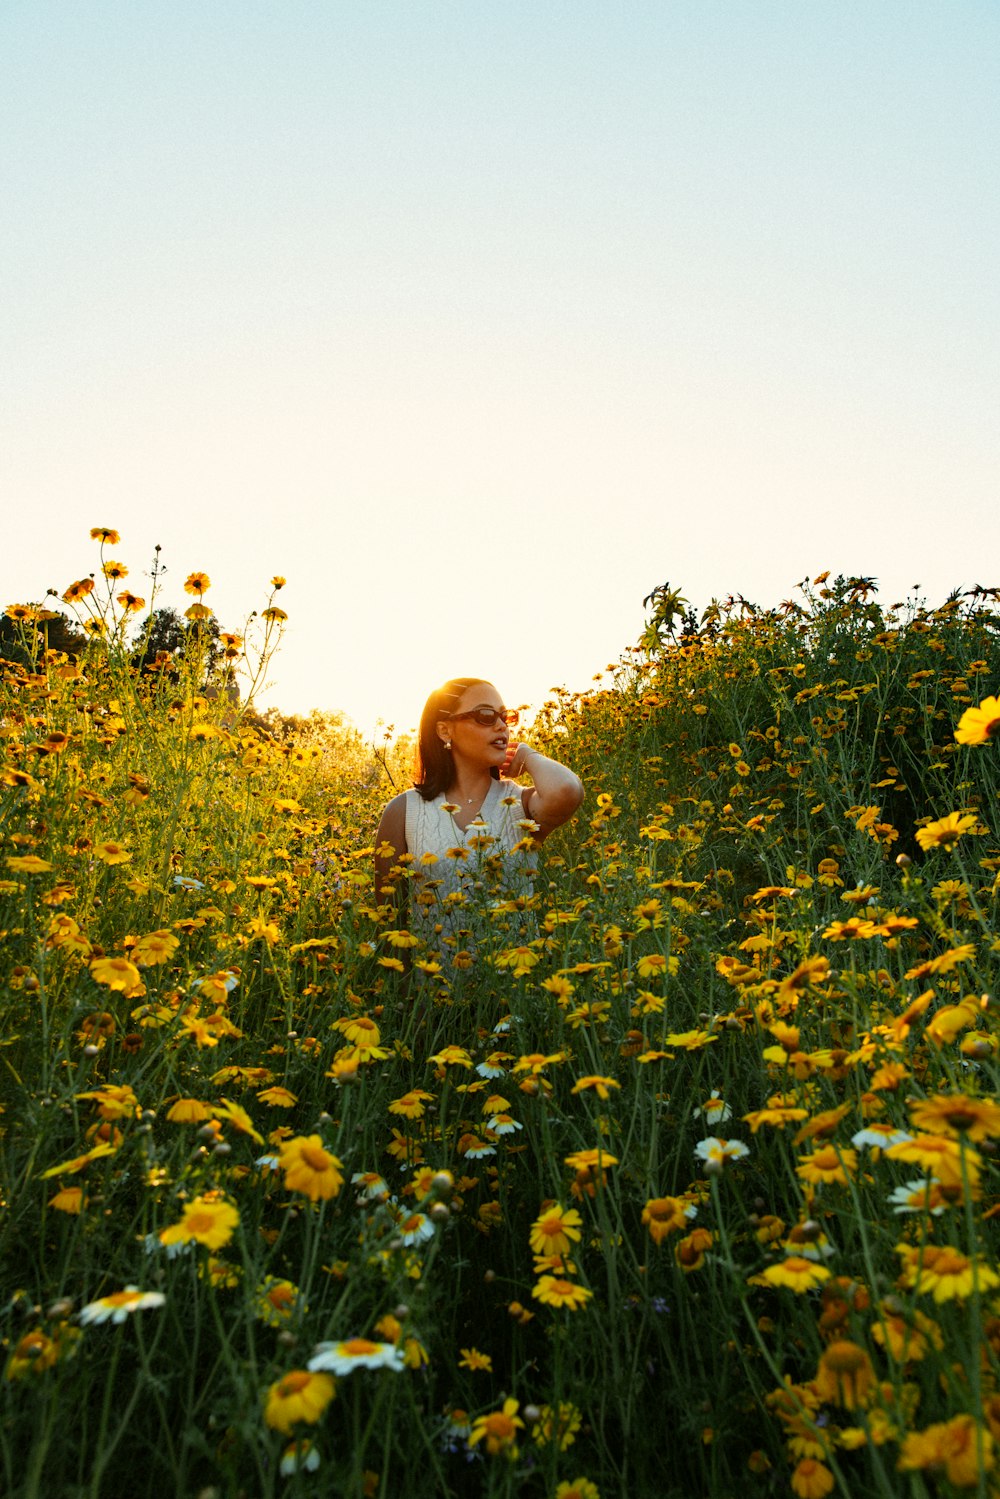 노란 꽃밭에 앉아 있는 여자